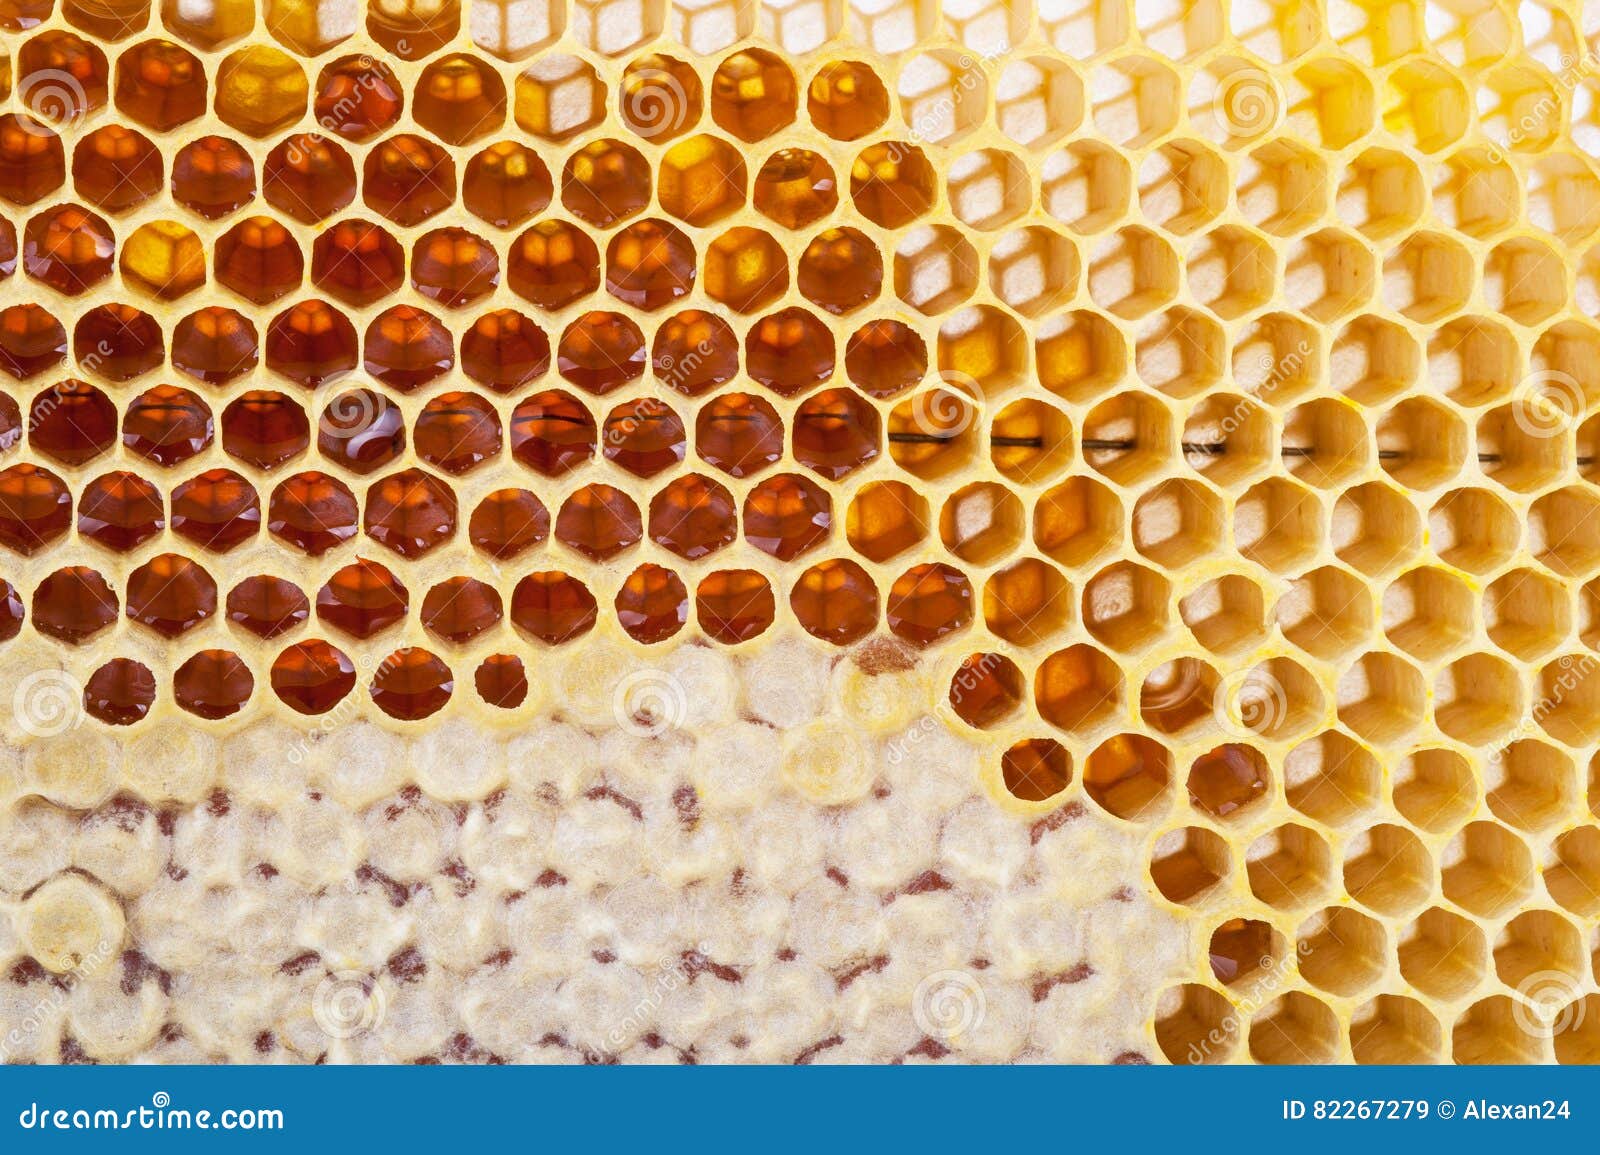 Bild Der Bienenwabe Background Stockbild Bild Von Bienenwabe Background